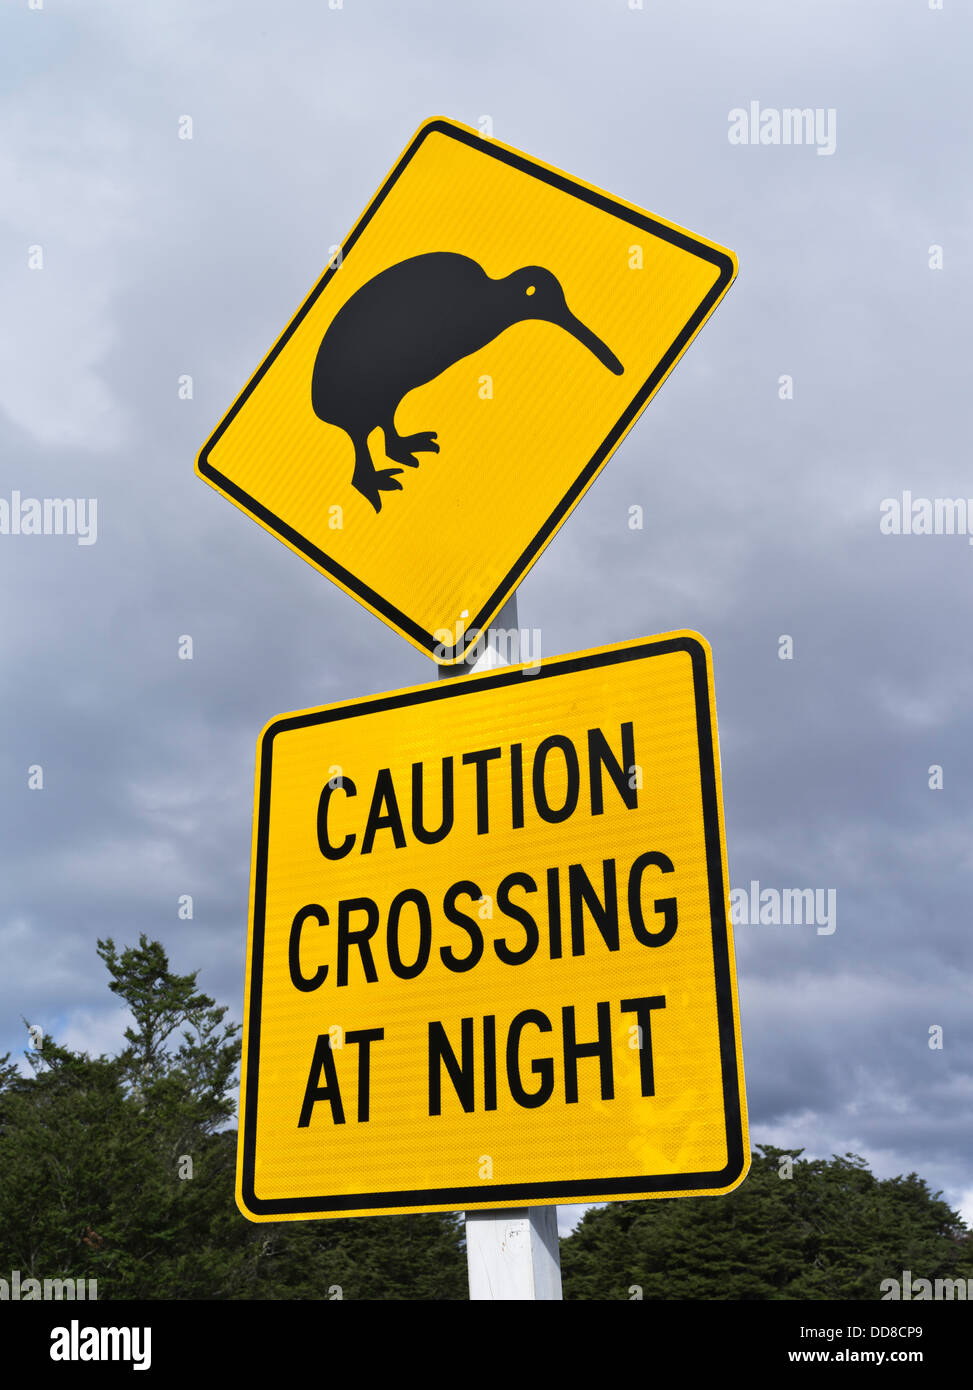 Parc national de Tongariro dh ÎLE DU NORD Nouvelle-zélande Attention Avertissement Kiwi road sign Banque D'Images